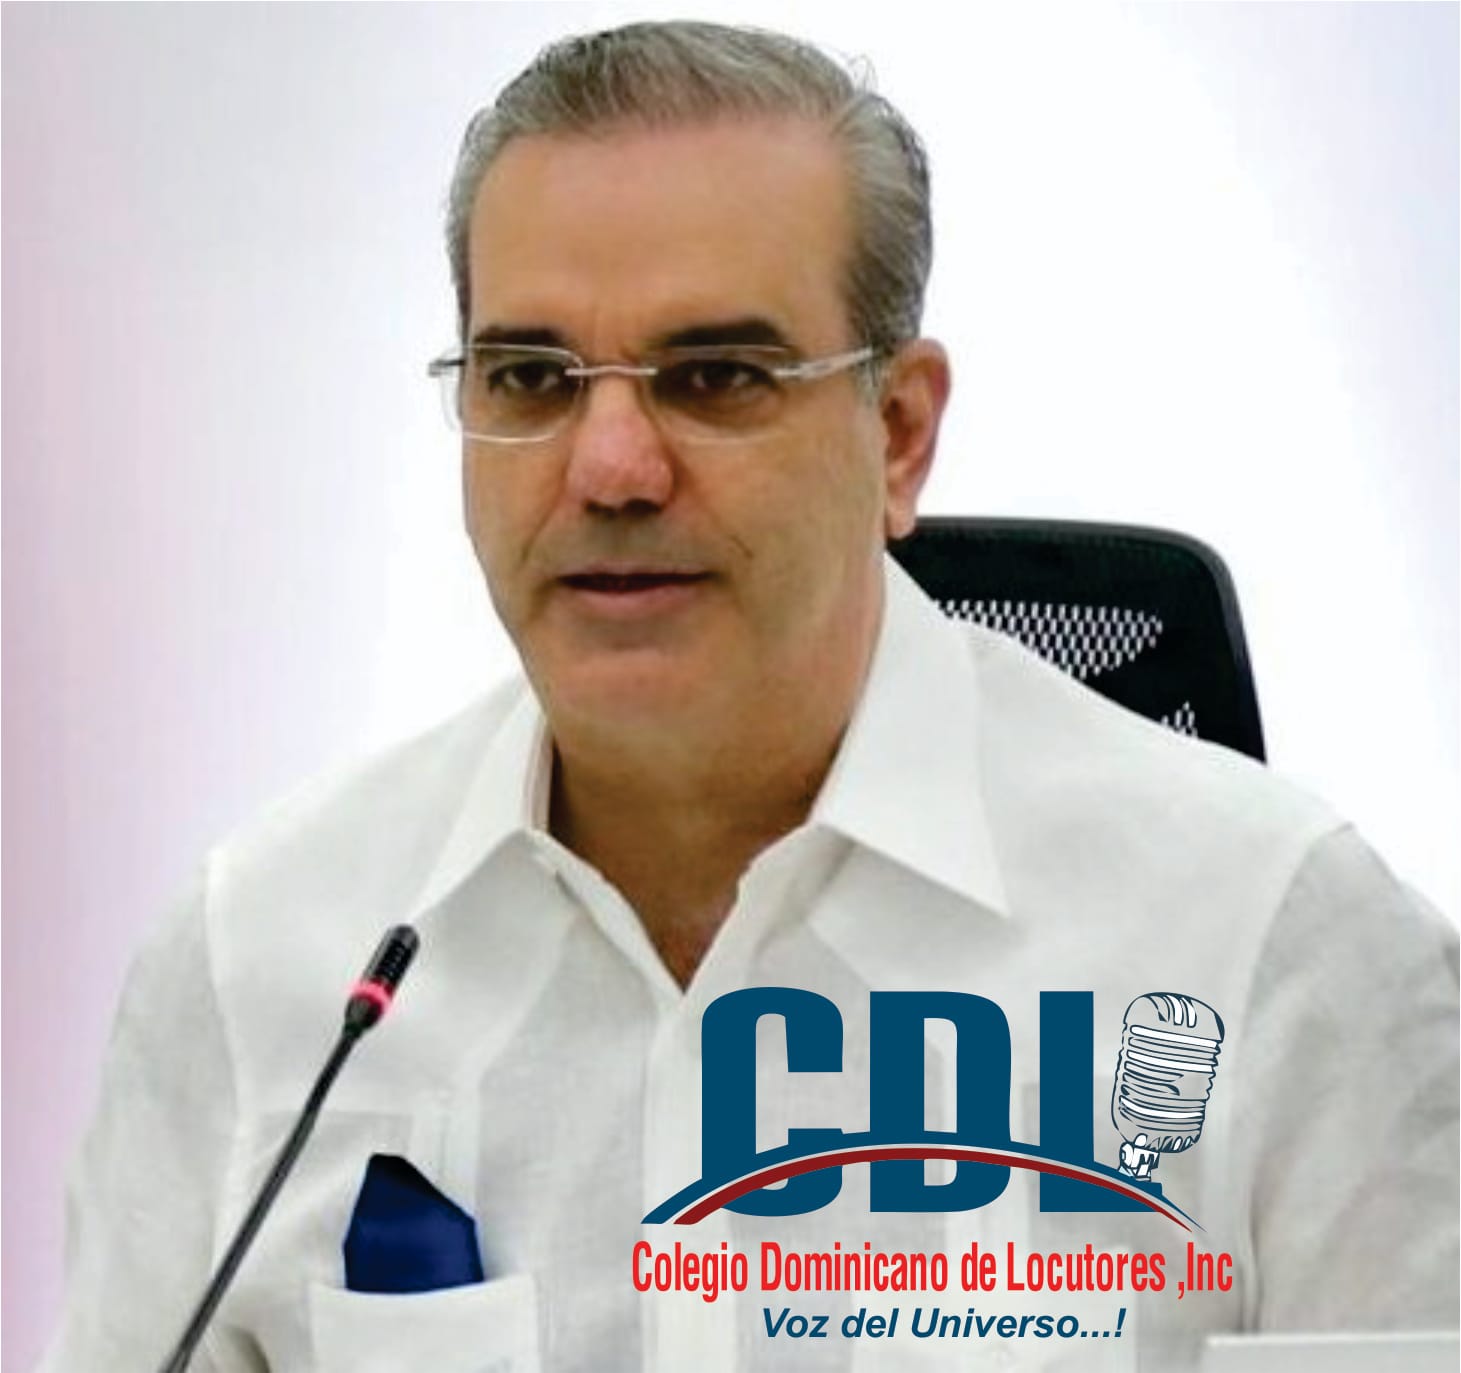 COLEGIO DOMINICANO DE LOCUTORES AGRADECE AL PRESIDENTE LUIS ABINADER OTORGAR PENSIONES A DECENAS DE LOCUTORES